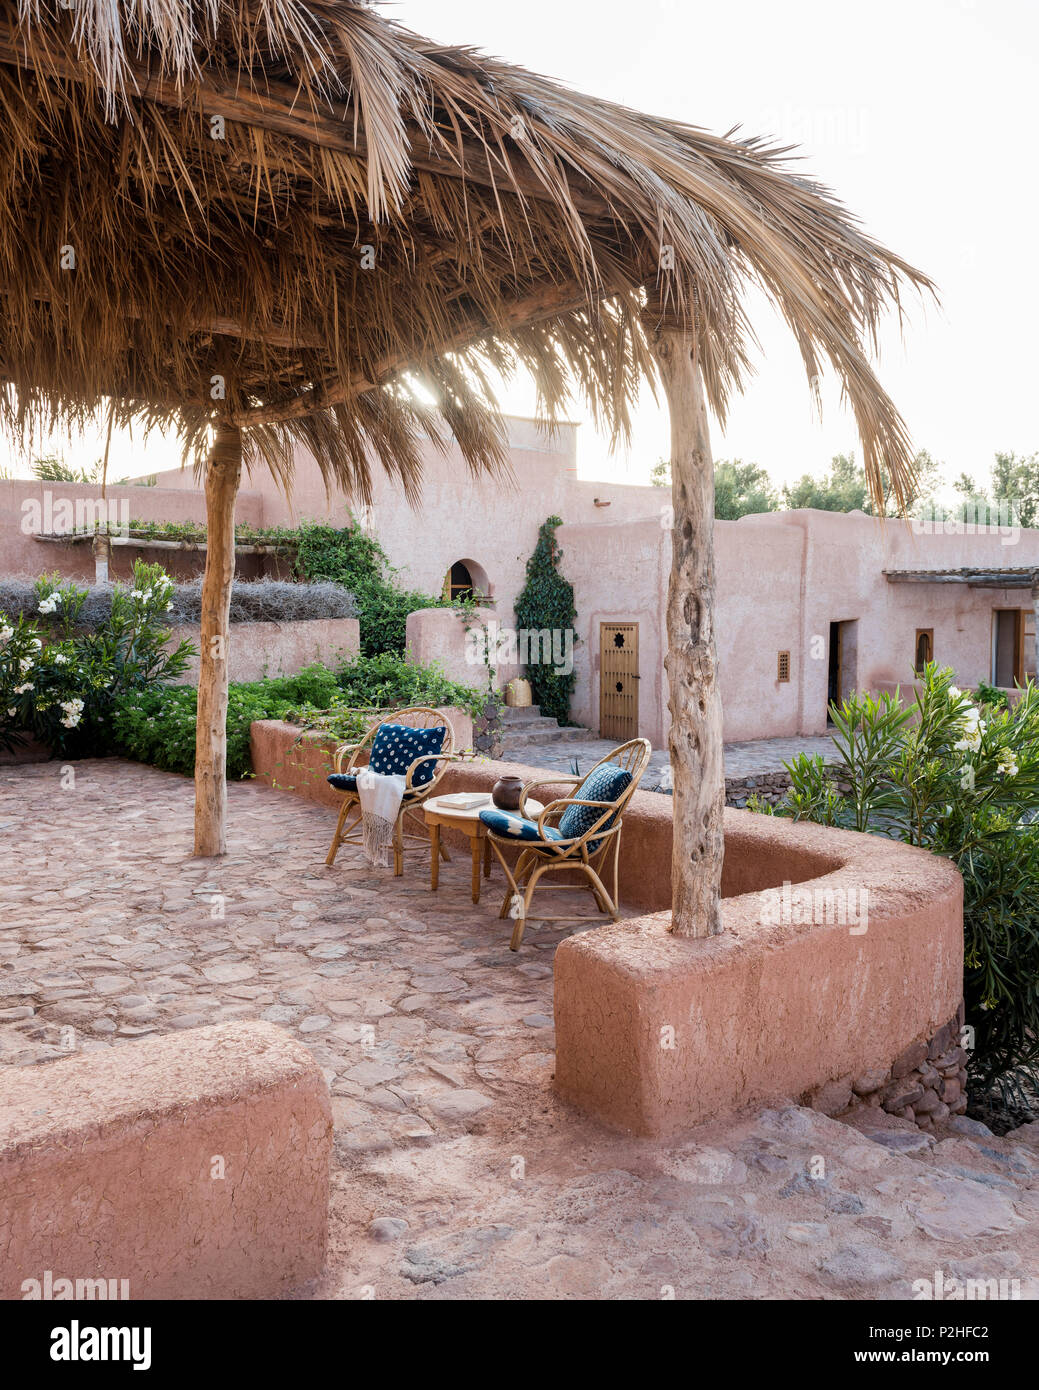 Ein paar Rattan Stühle auf der Terrasse im Garten mit Erde Mauern, Kräuter und marokkanische Wildpflanzen. Garten Design von Arnaud Casaus Stockfoto